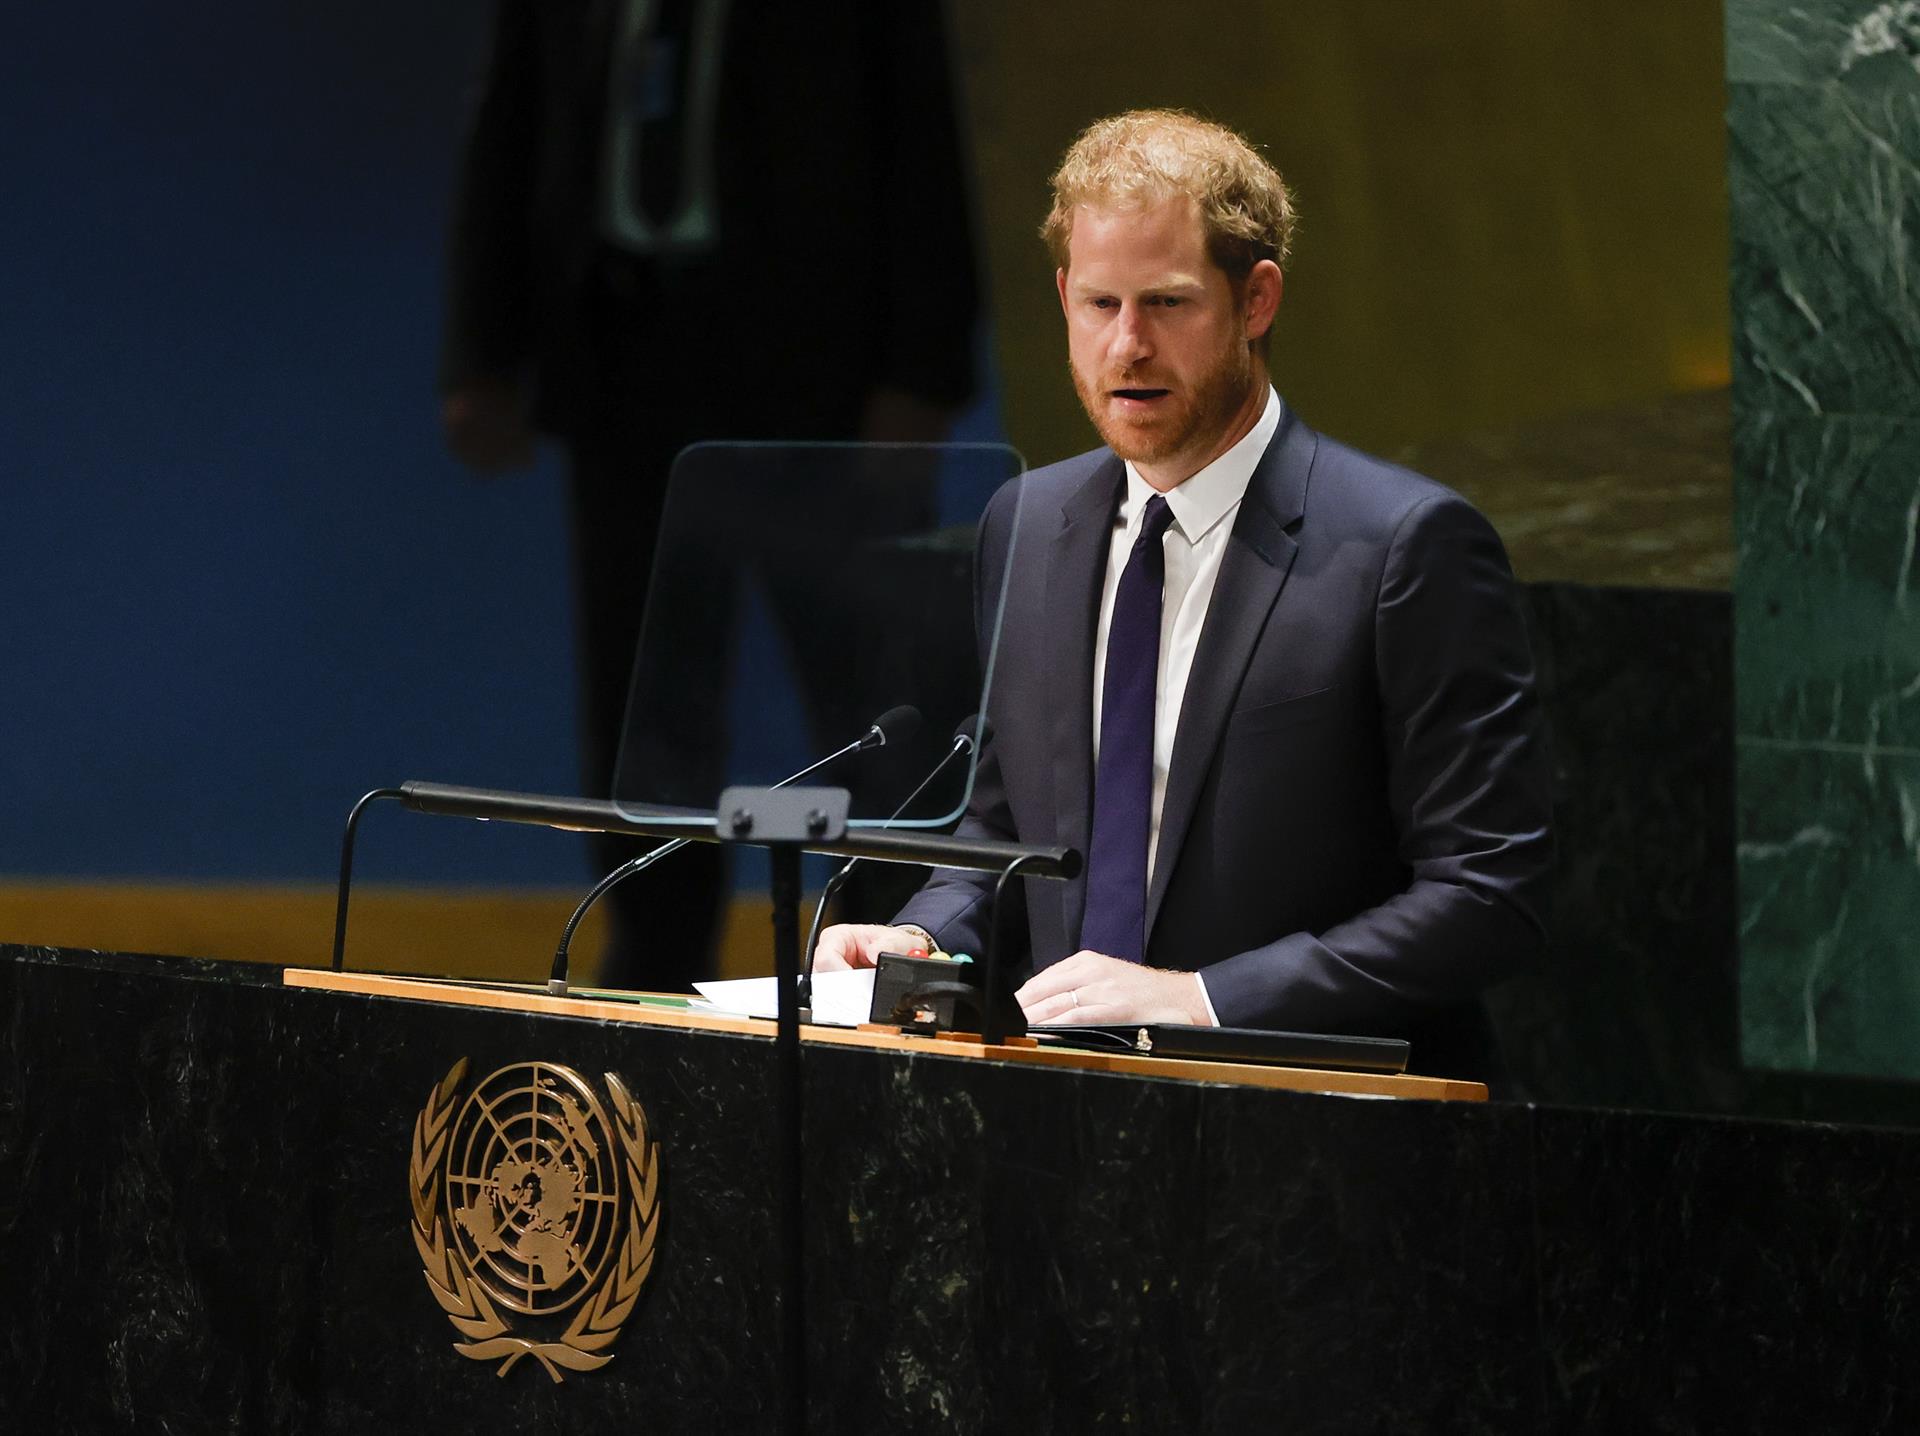 El príncipe Enrique alerta de un “ataque global” a la democracia y libertad